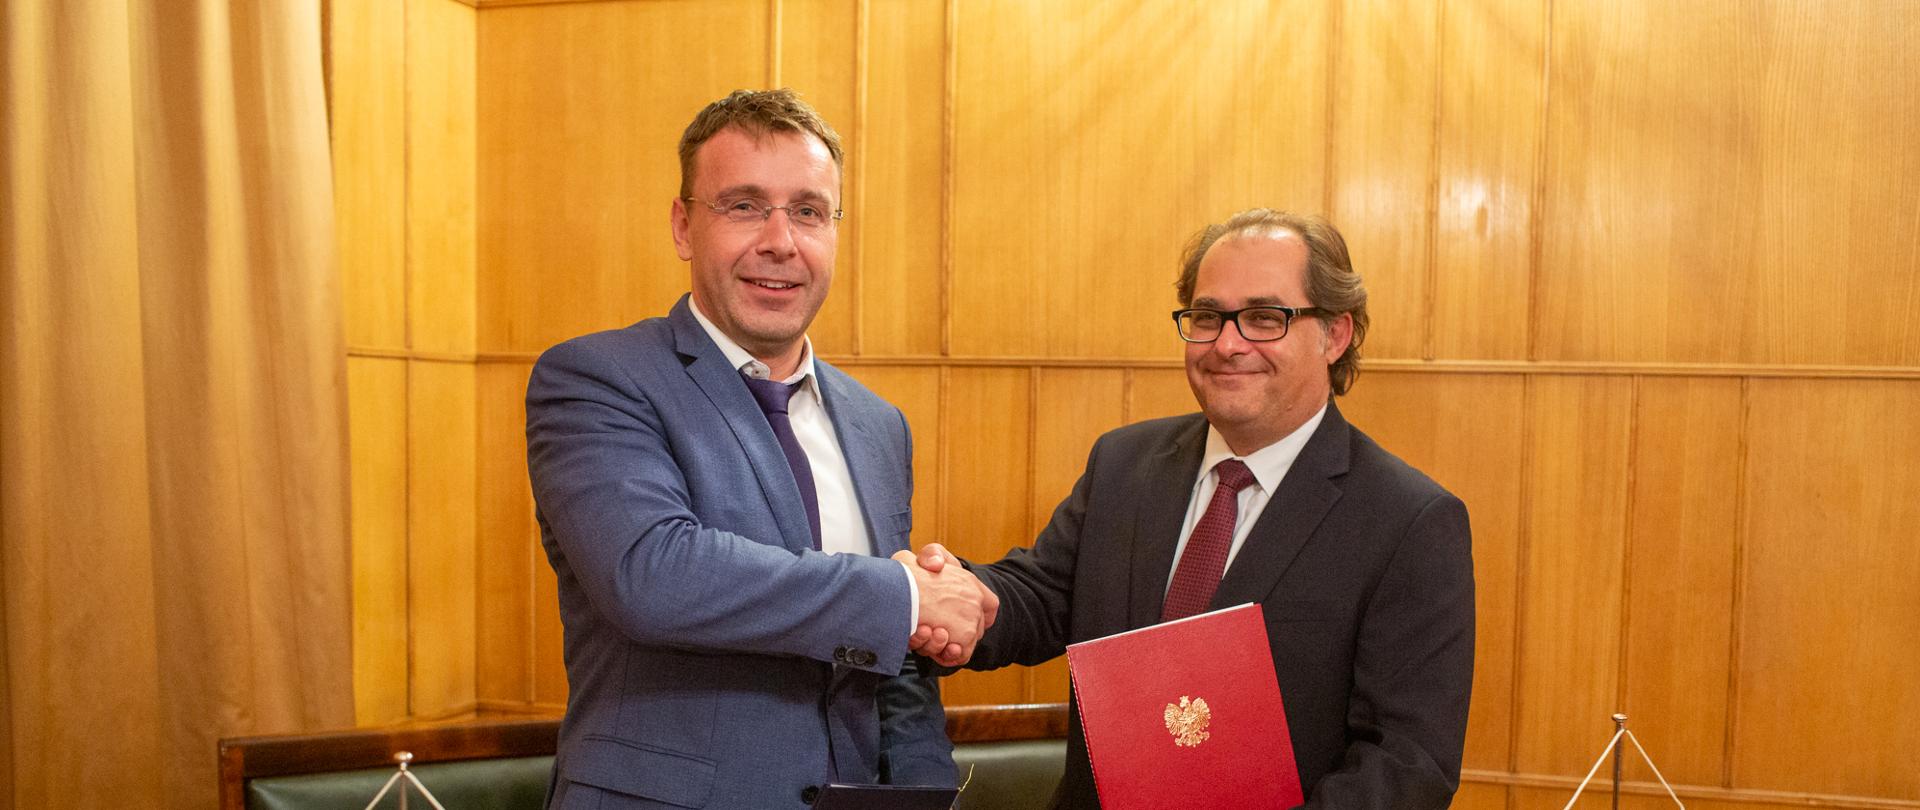 Uścisk dłoni ministrów po podpisaniu porozumienia. Minister Vladimir Kremlik (po lewej) i minister Marek Gróbarczyk (po prawej).